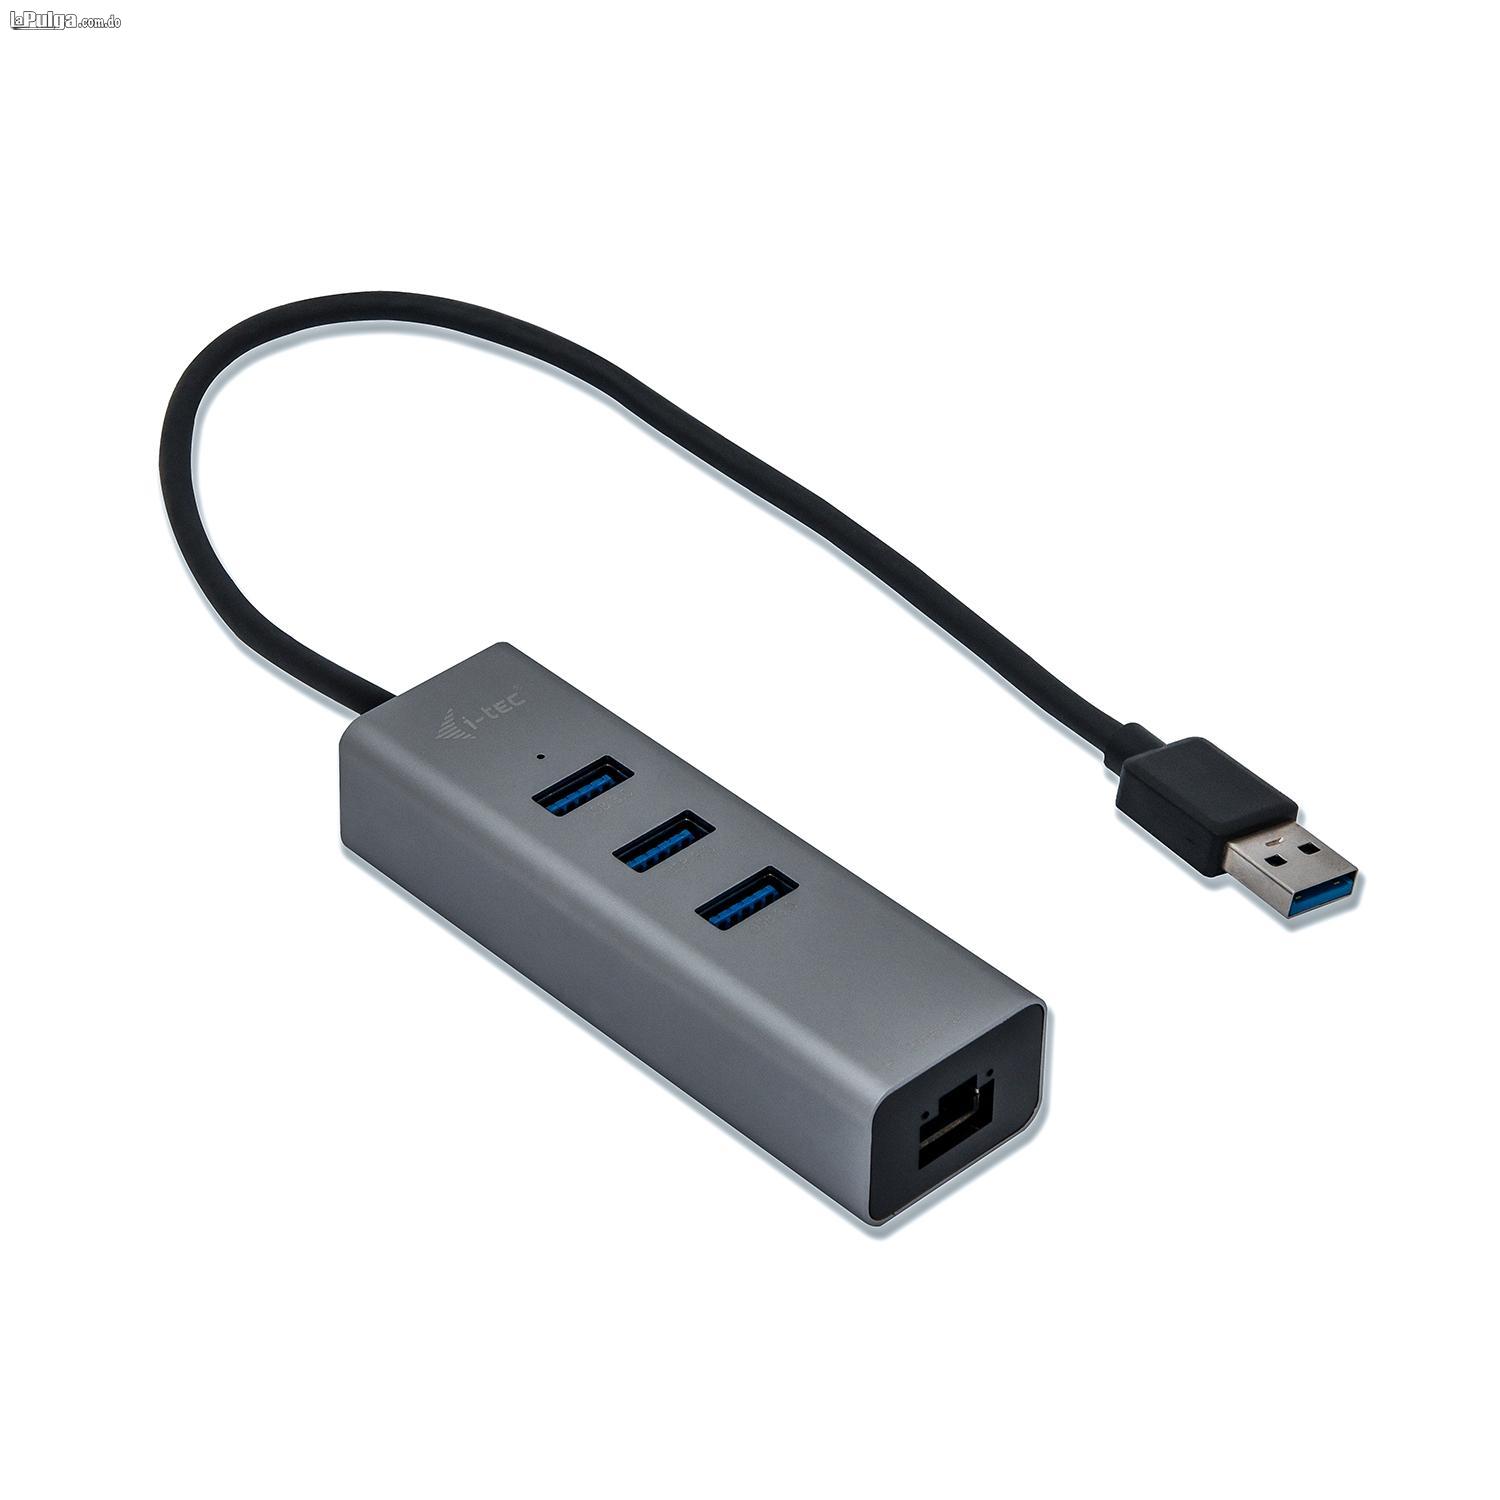 Adaptador USB 2.0 a red - Ethernet y Hub USB Foto 7115156-2.jpg